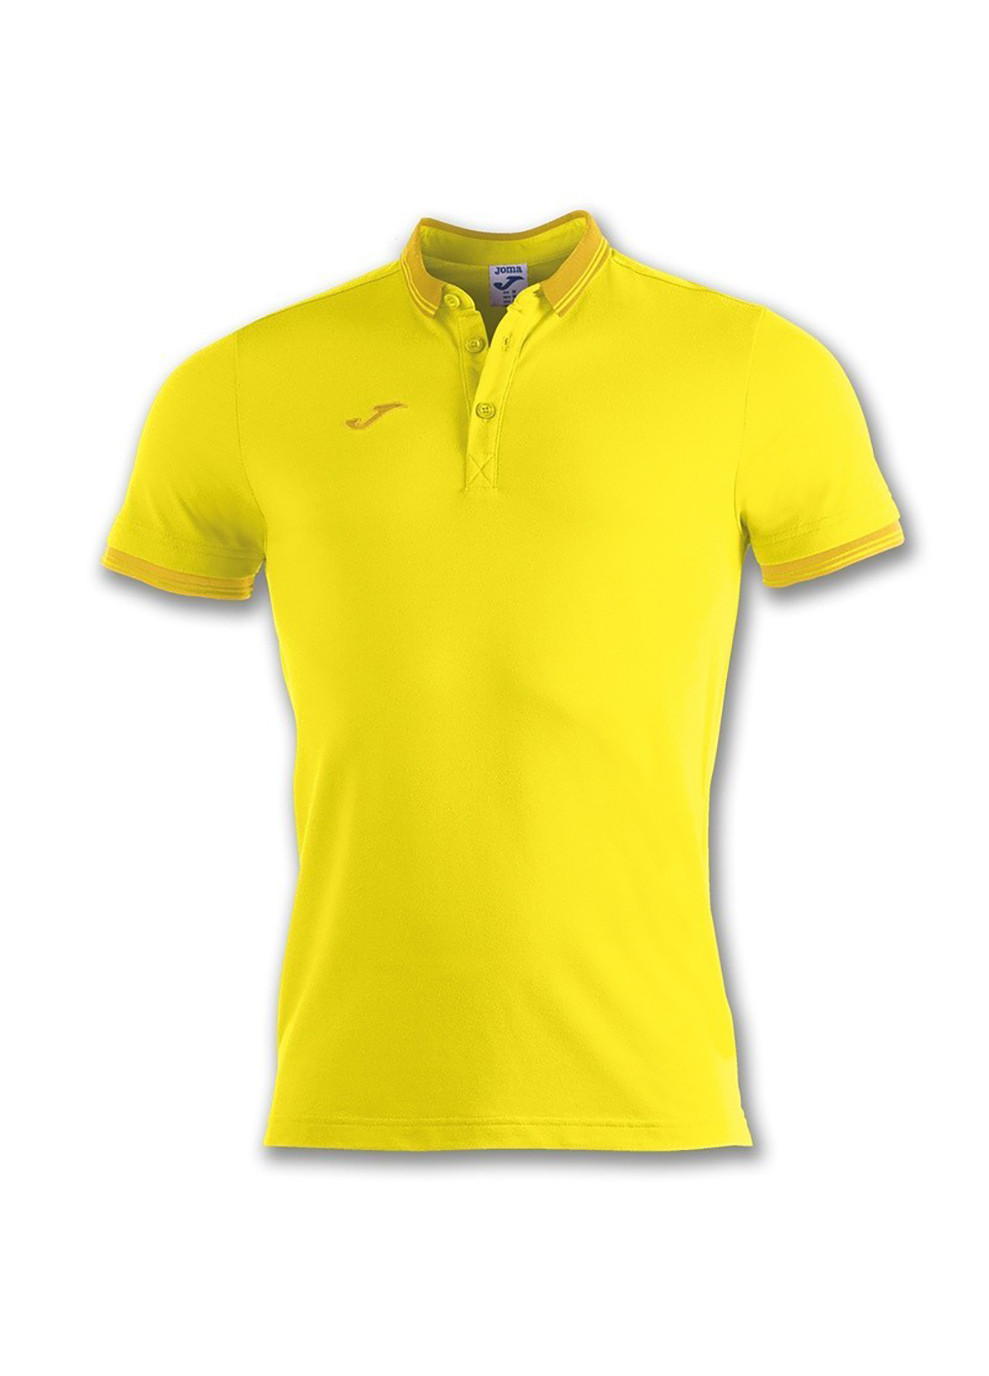 Желтая футболка-поло polo shirt bali ii yellow s/s жёлтый для мужчин Joma